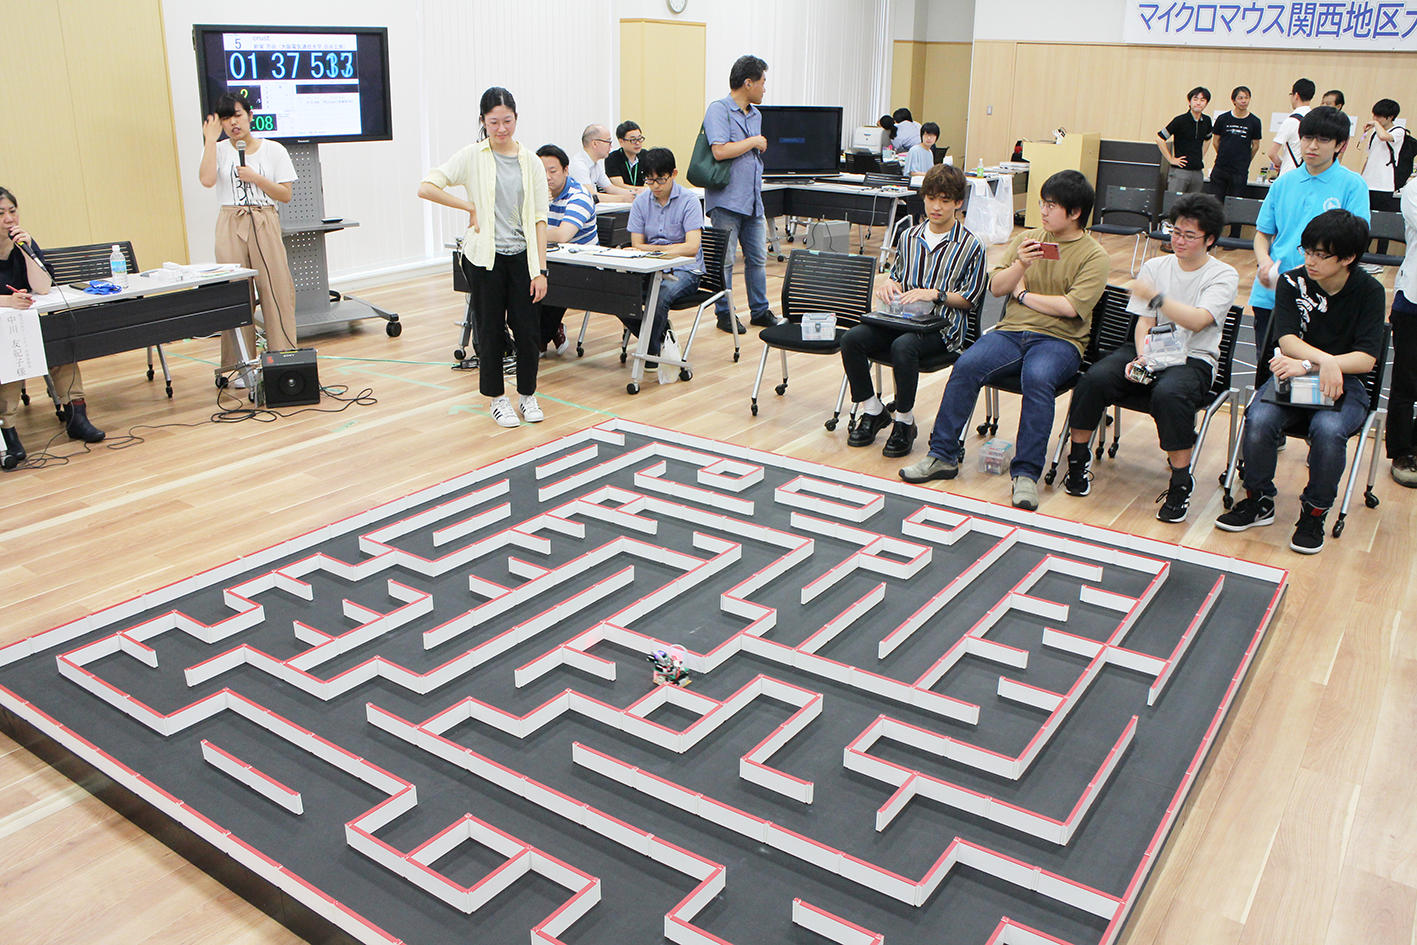 世界でも歴史あるロボット大会「マイクロマウス関西地区大会」を大阪電気通信大学が共催、全日本TOPランカー多数参加